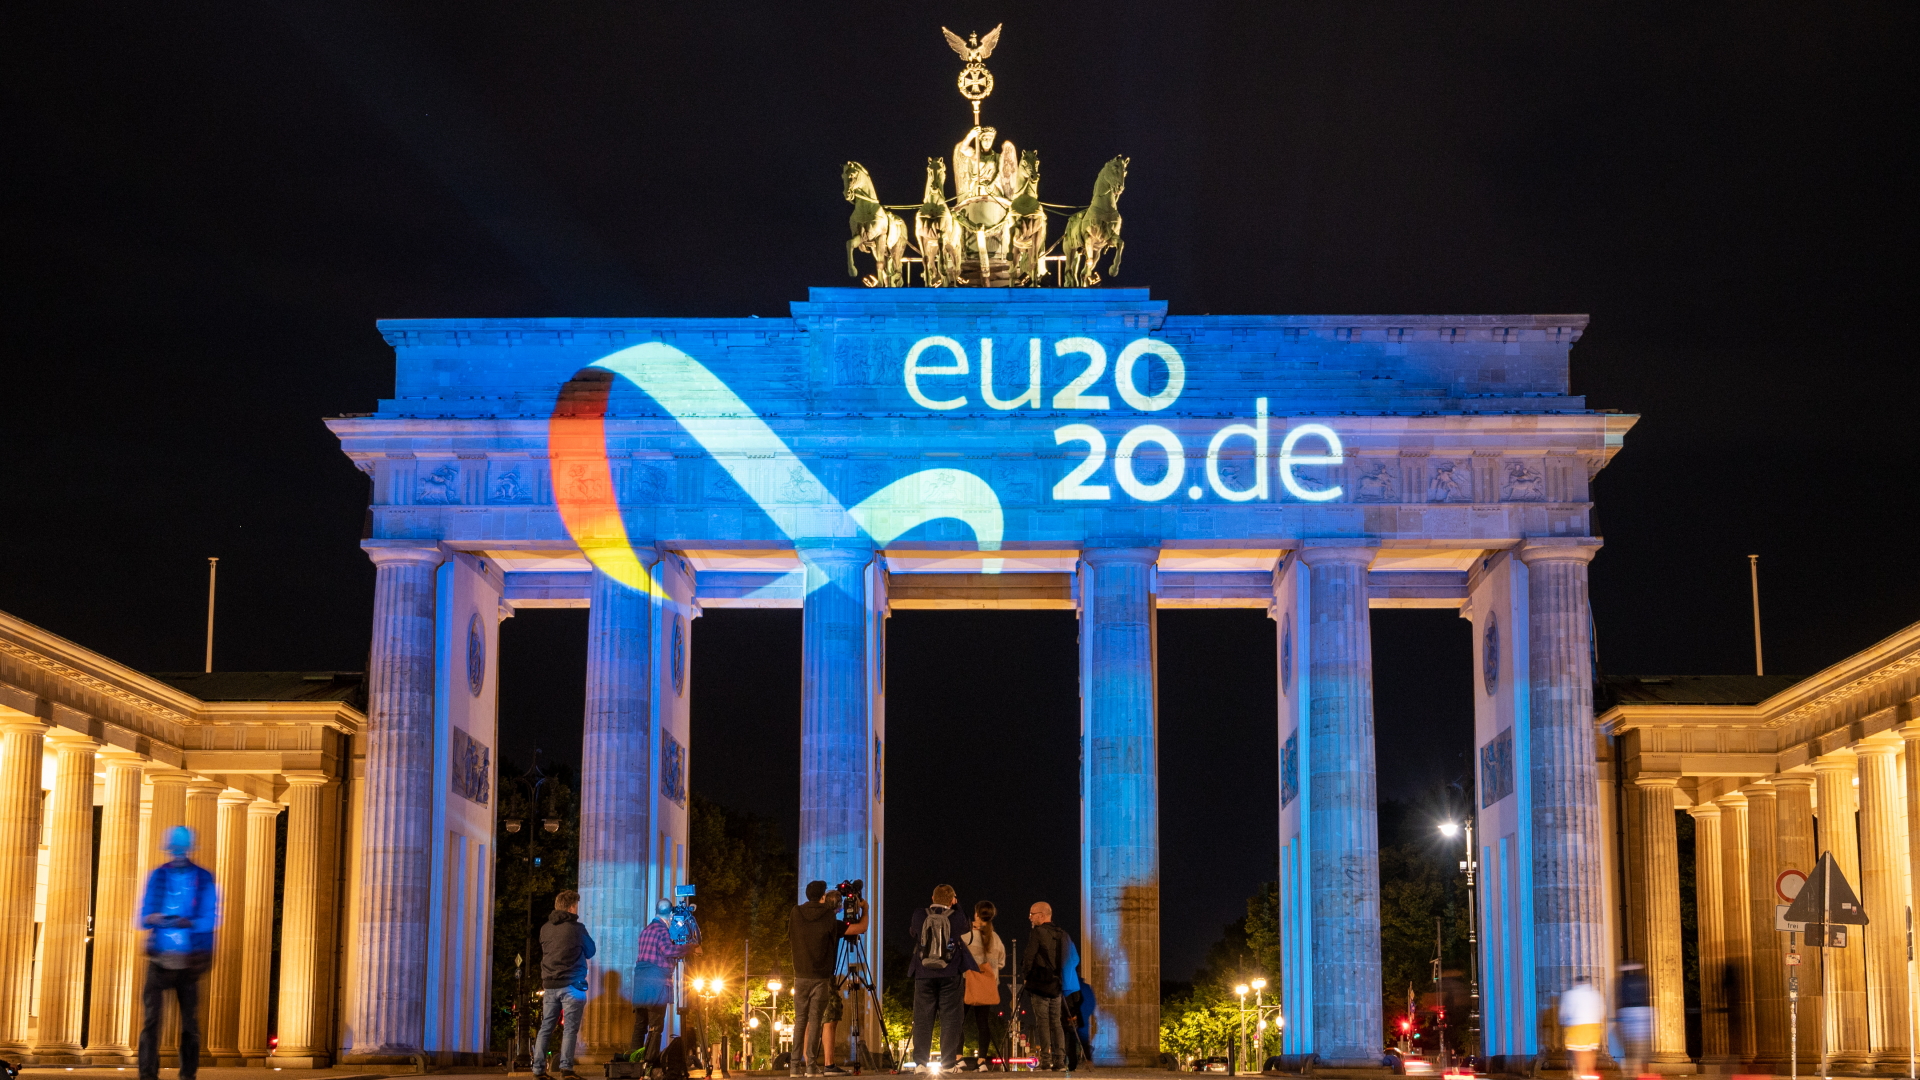  Zum Start der deutschen EU-Ratspräsidentschaft wird eine Animation des Logos der deutschen Ratspräsidentschaft auf das Brandenburger Tor projiziert. | dpa